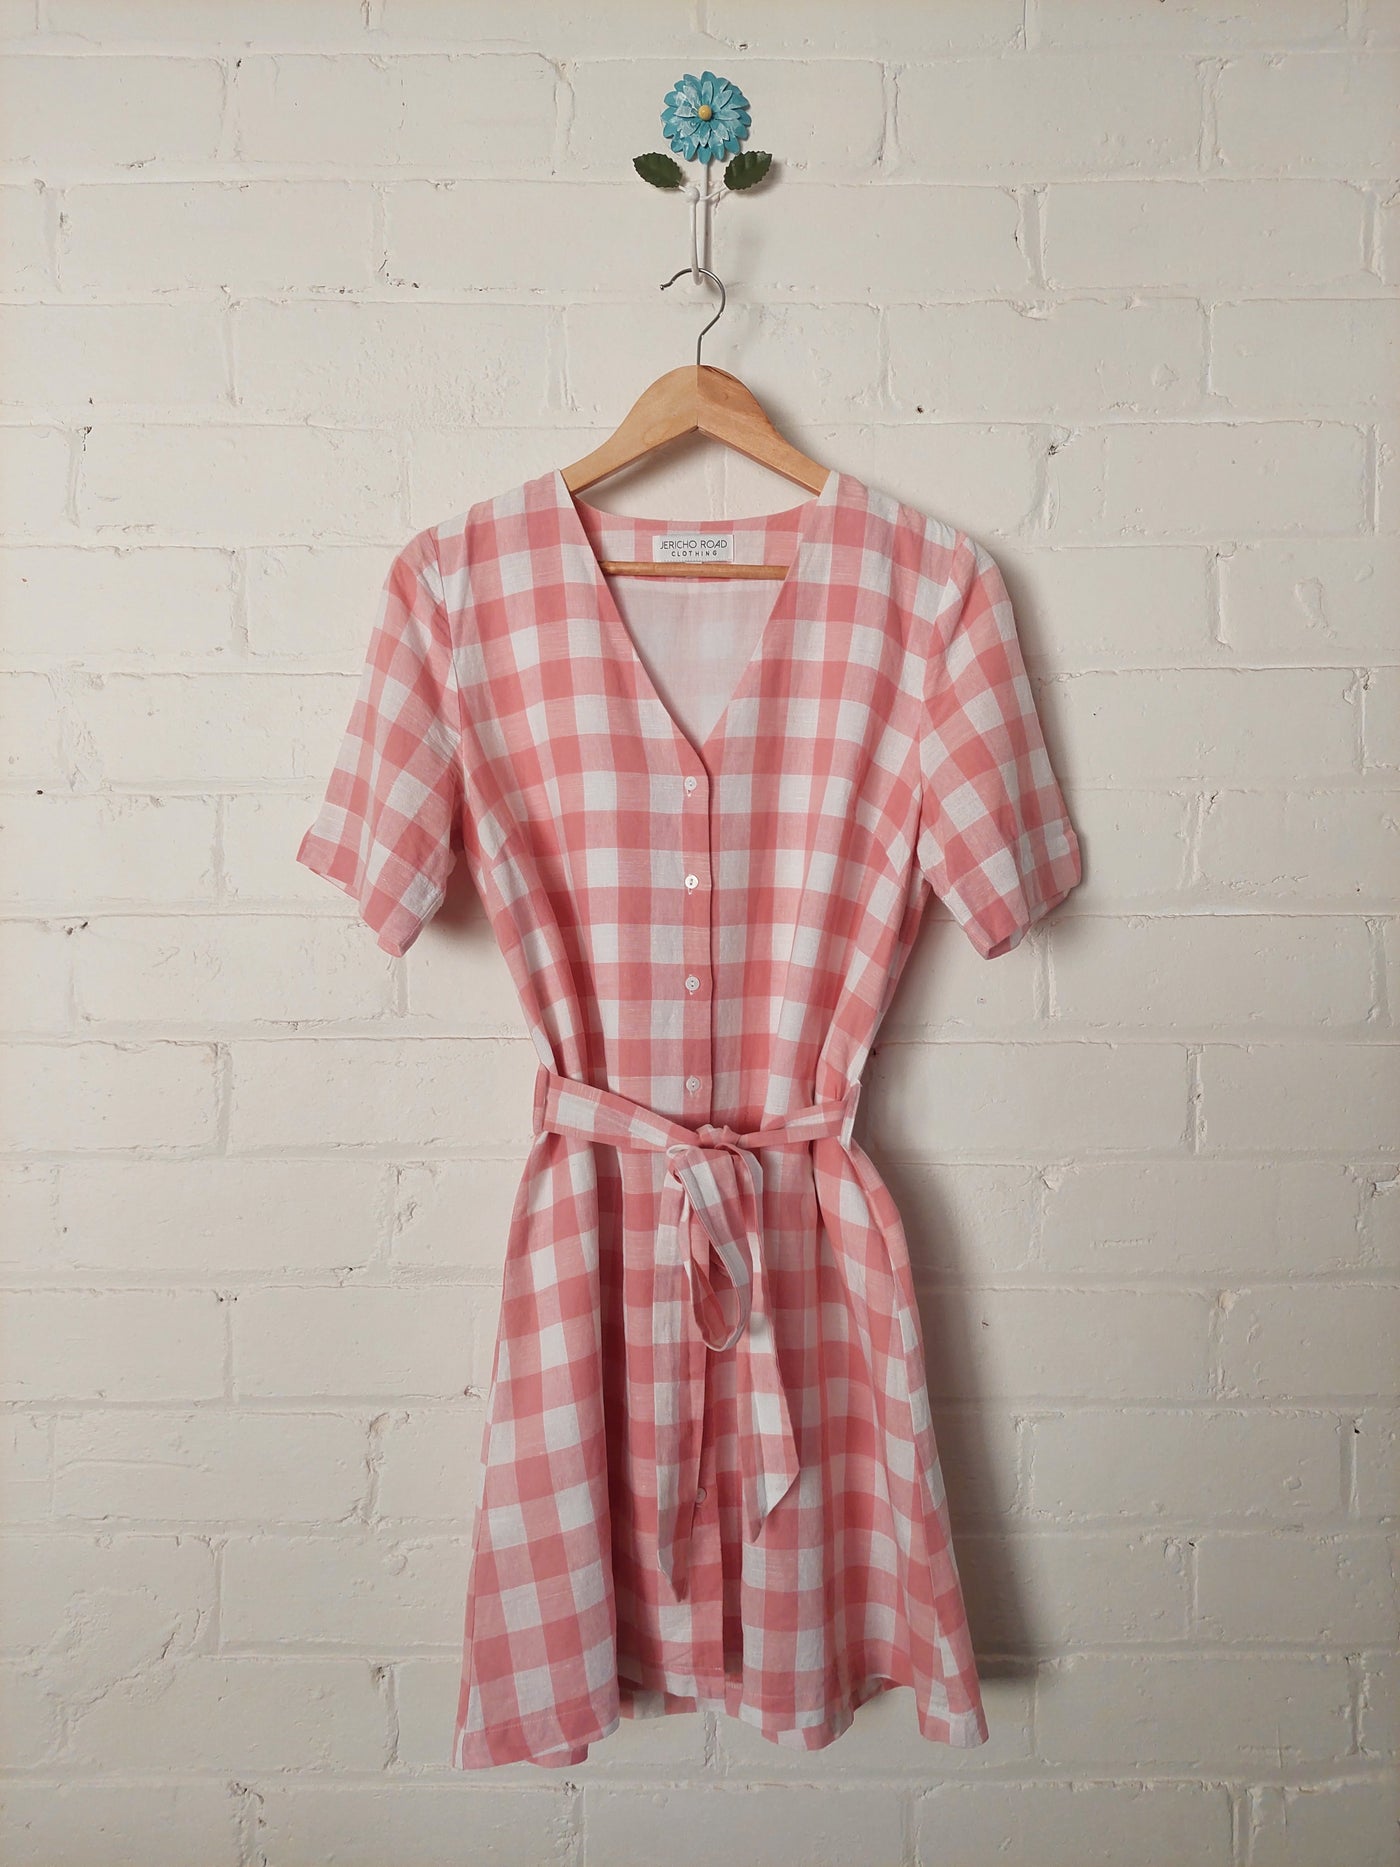 Jericho Road Clothing Paradise pink gingham dress, Size 12